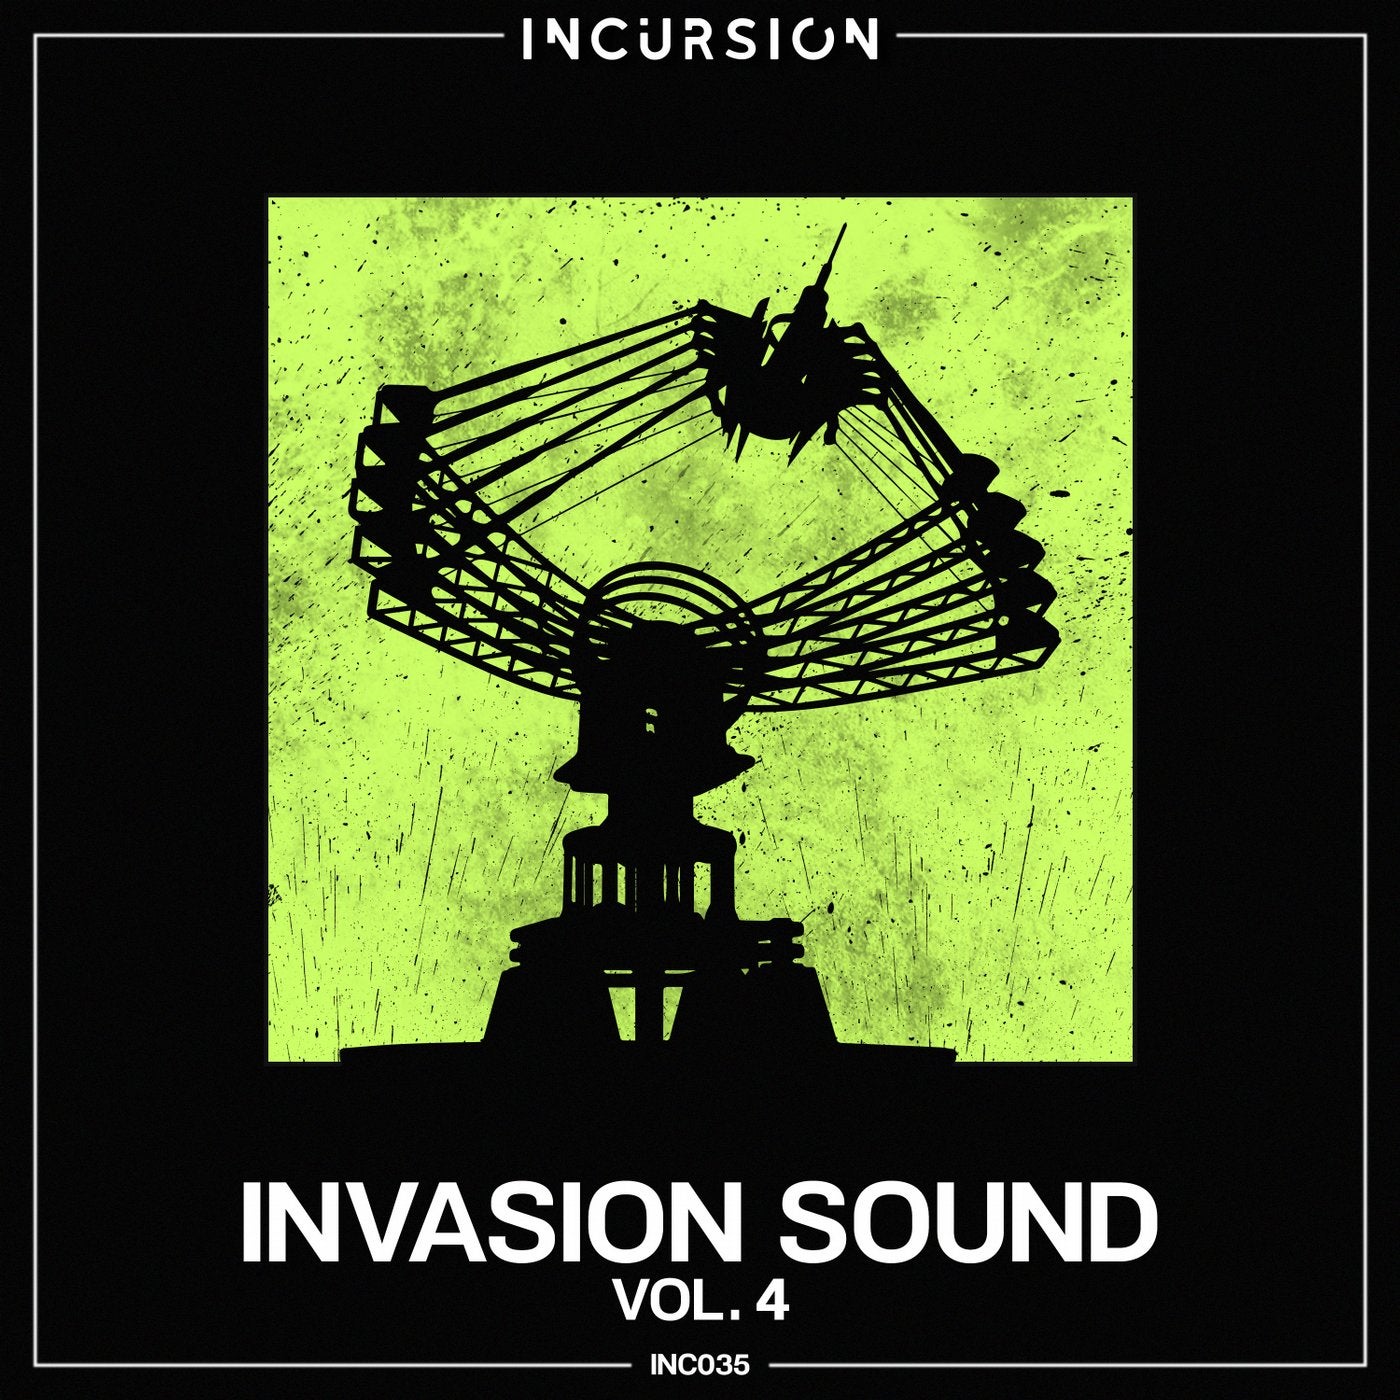 Invasion Sound, Vol. 4